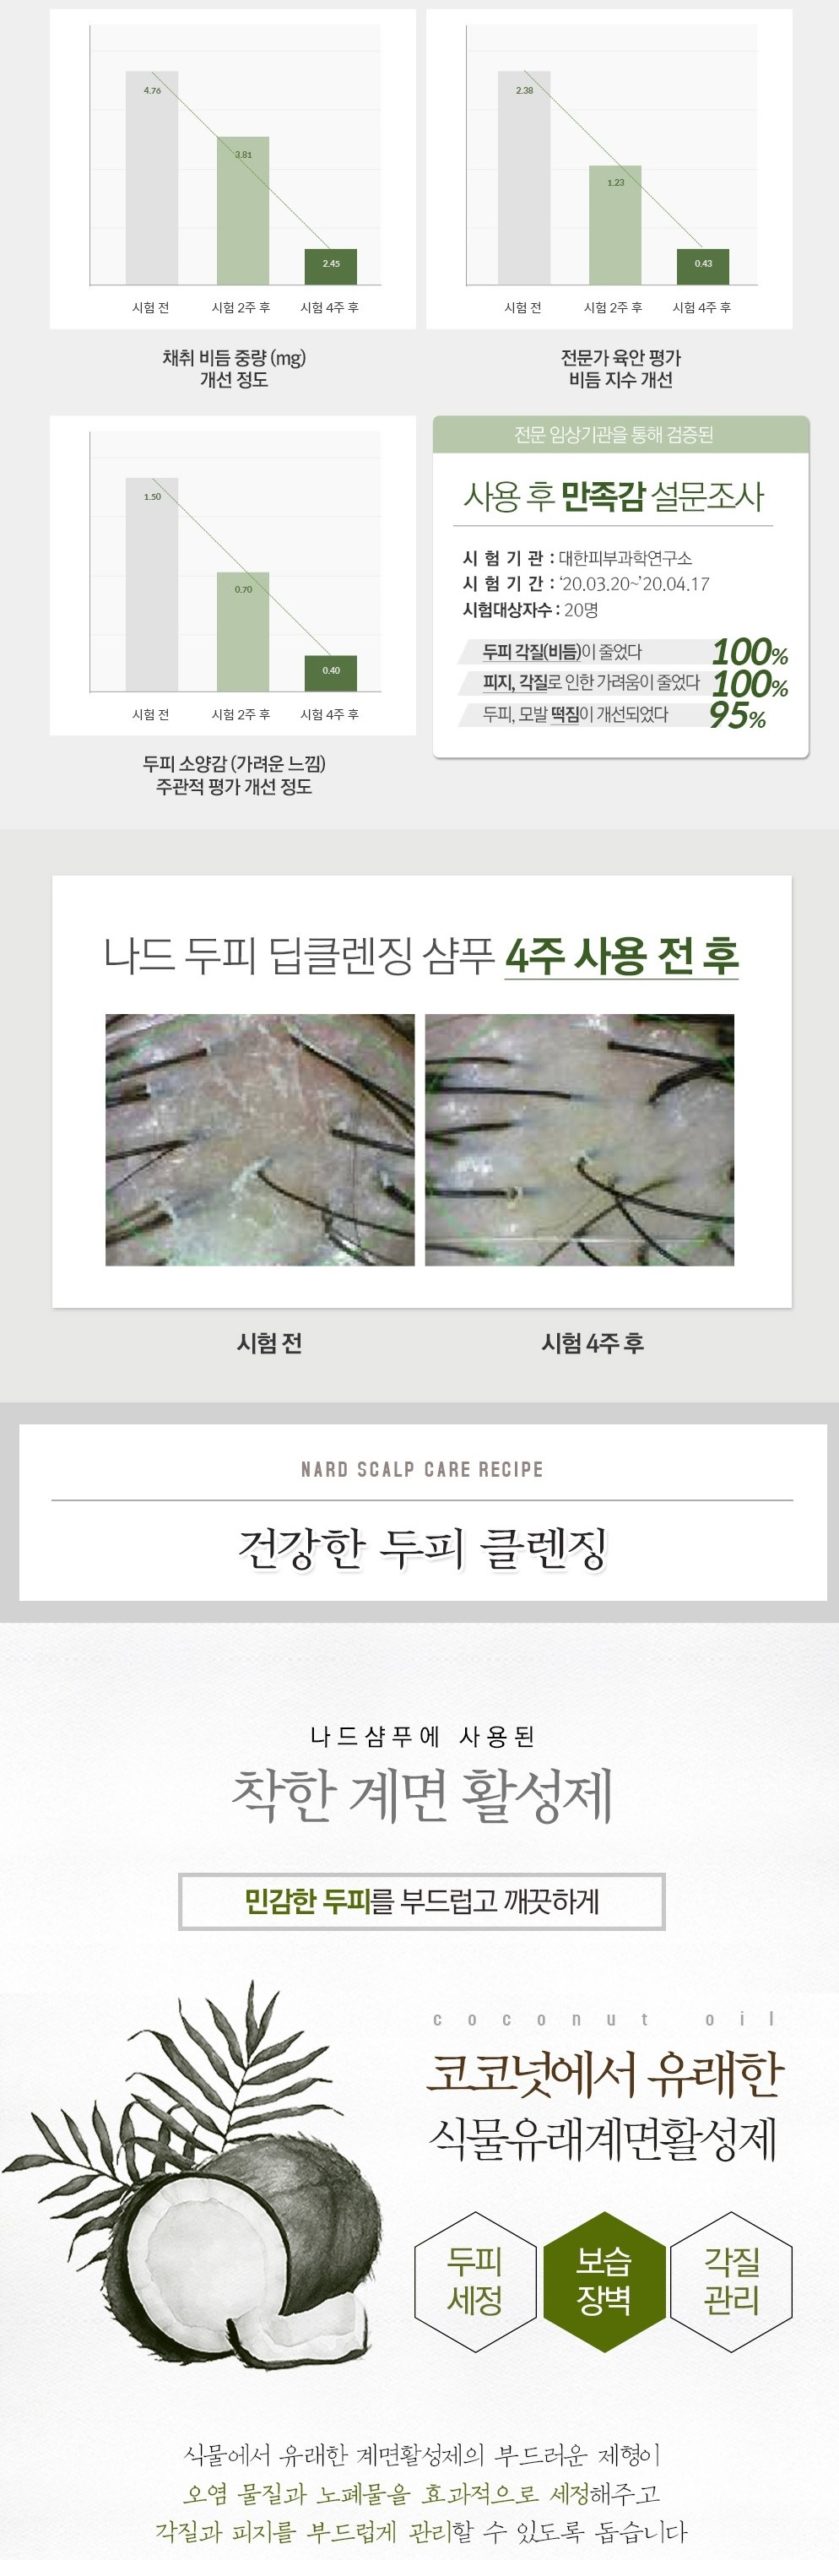 韓國食品-[나드] 두피 딥 클렌징 샴푸 1000ml